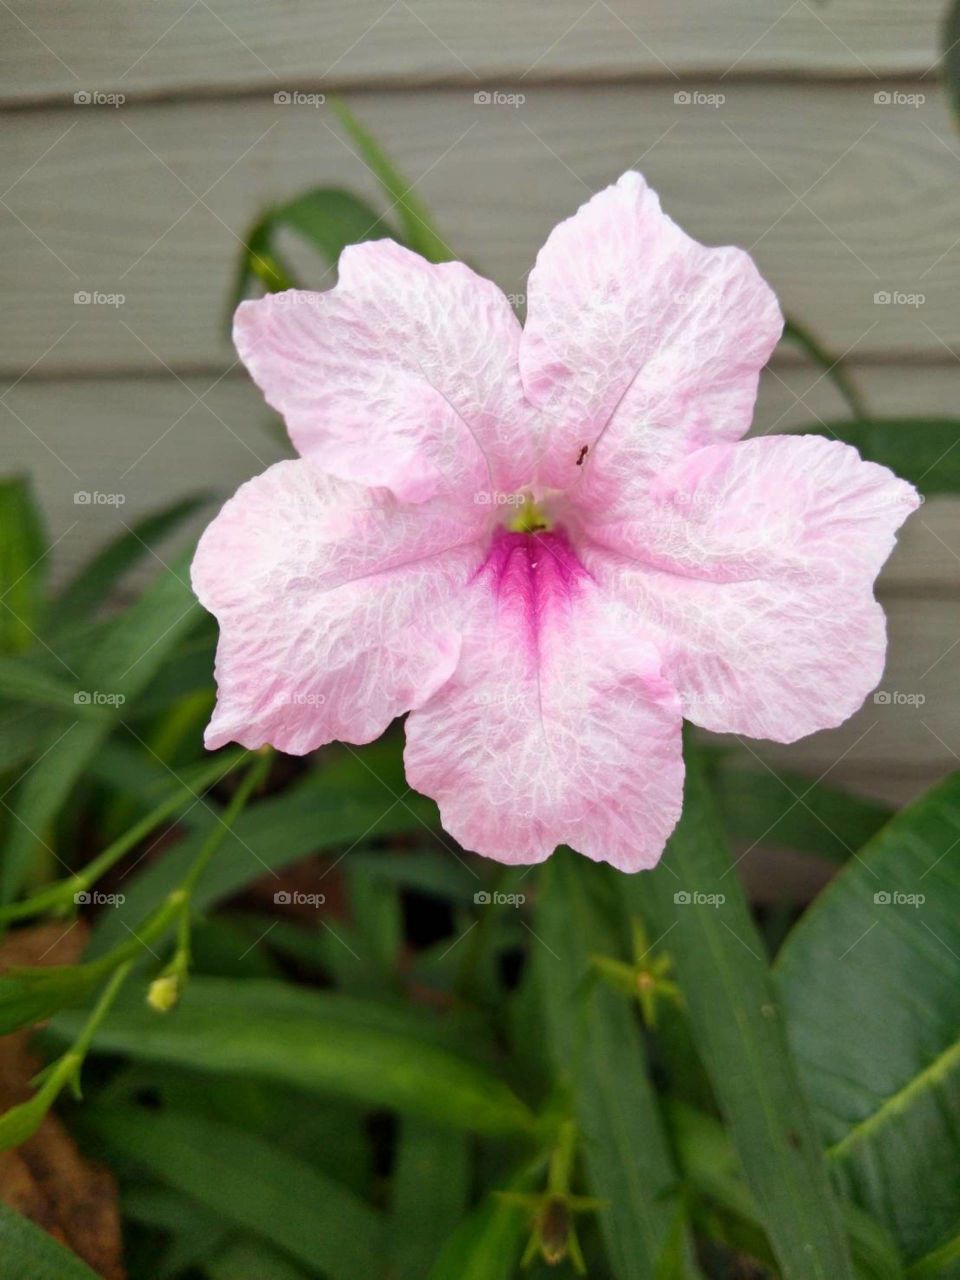 Pink flpwer in my garden.